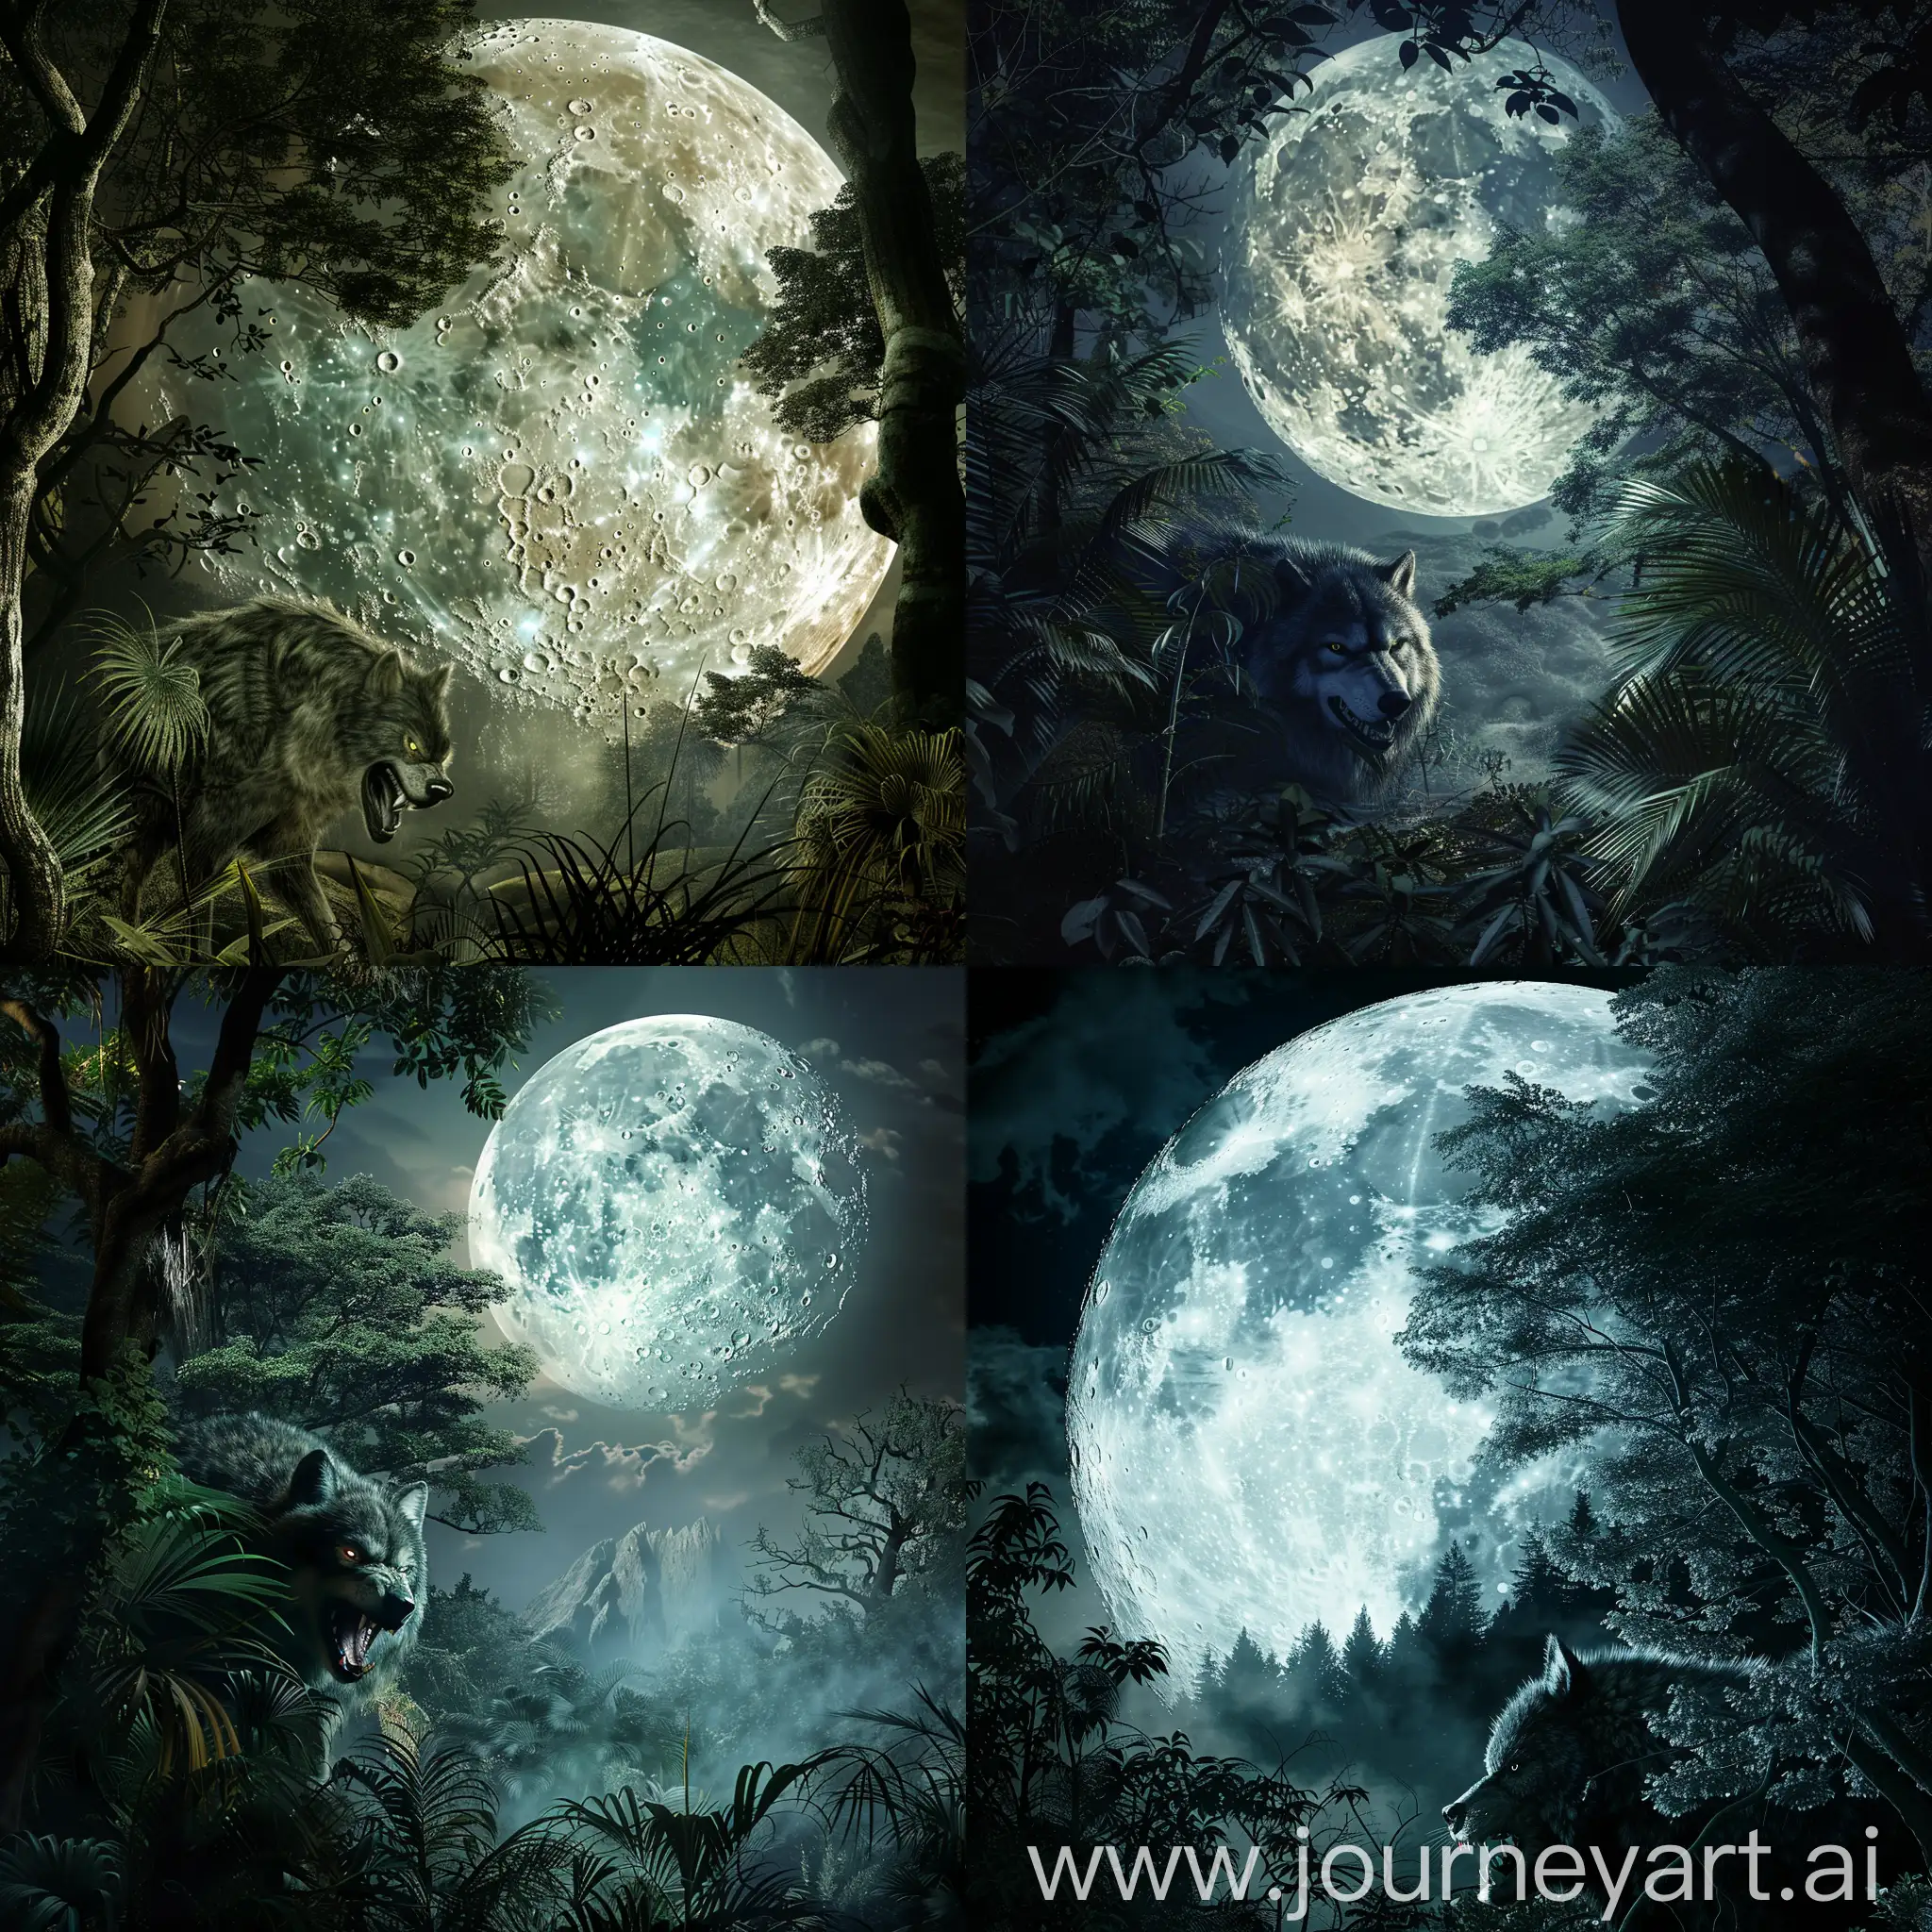 Werewolf-lurking-in-the-moonlit-forest